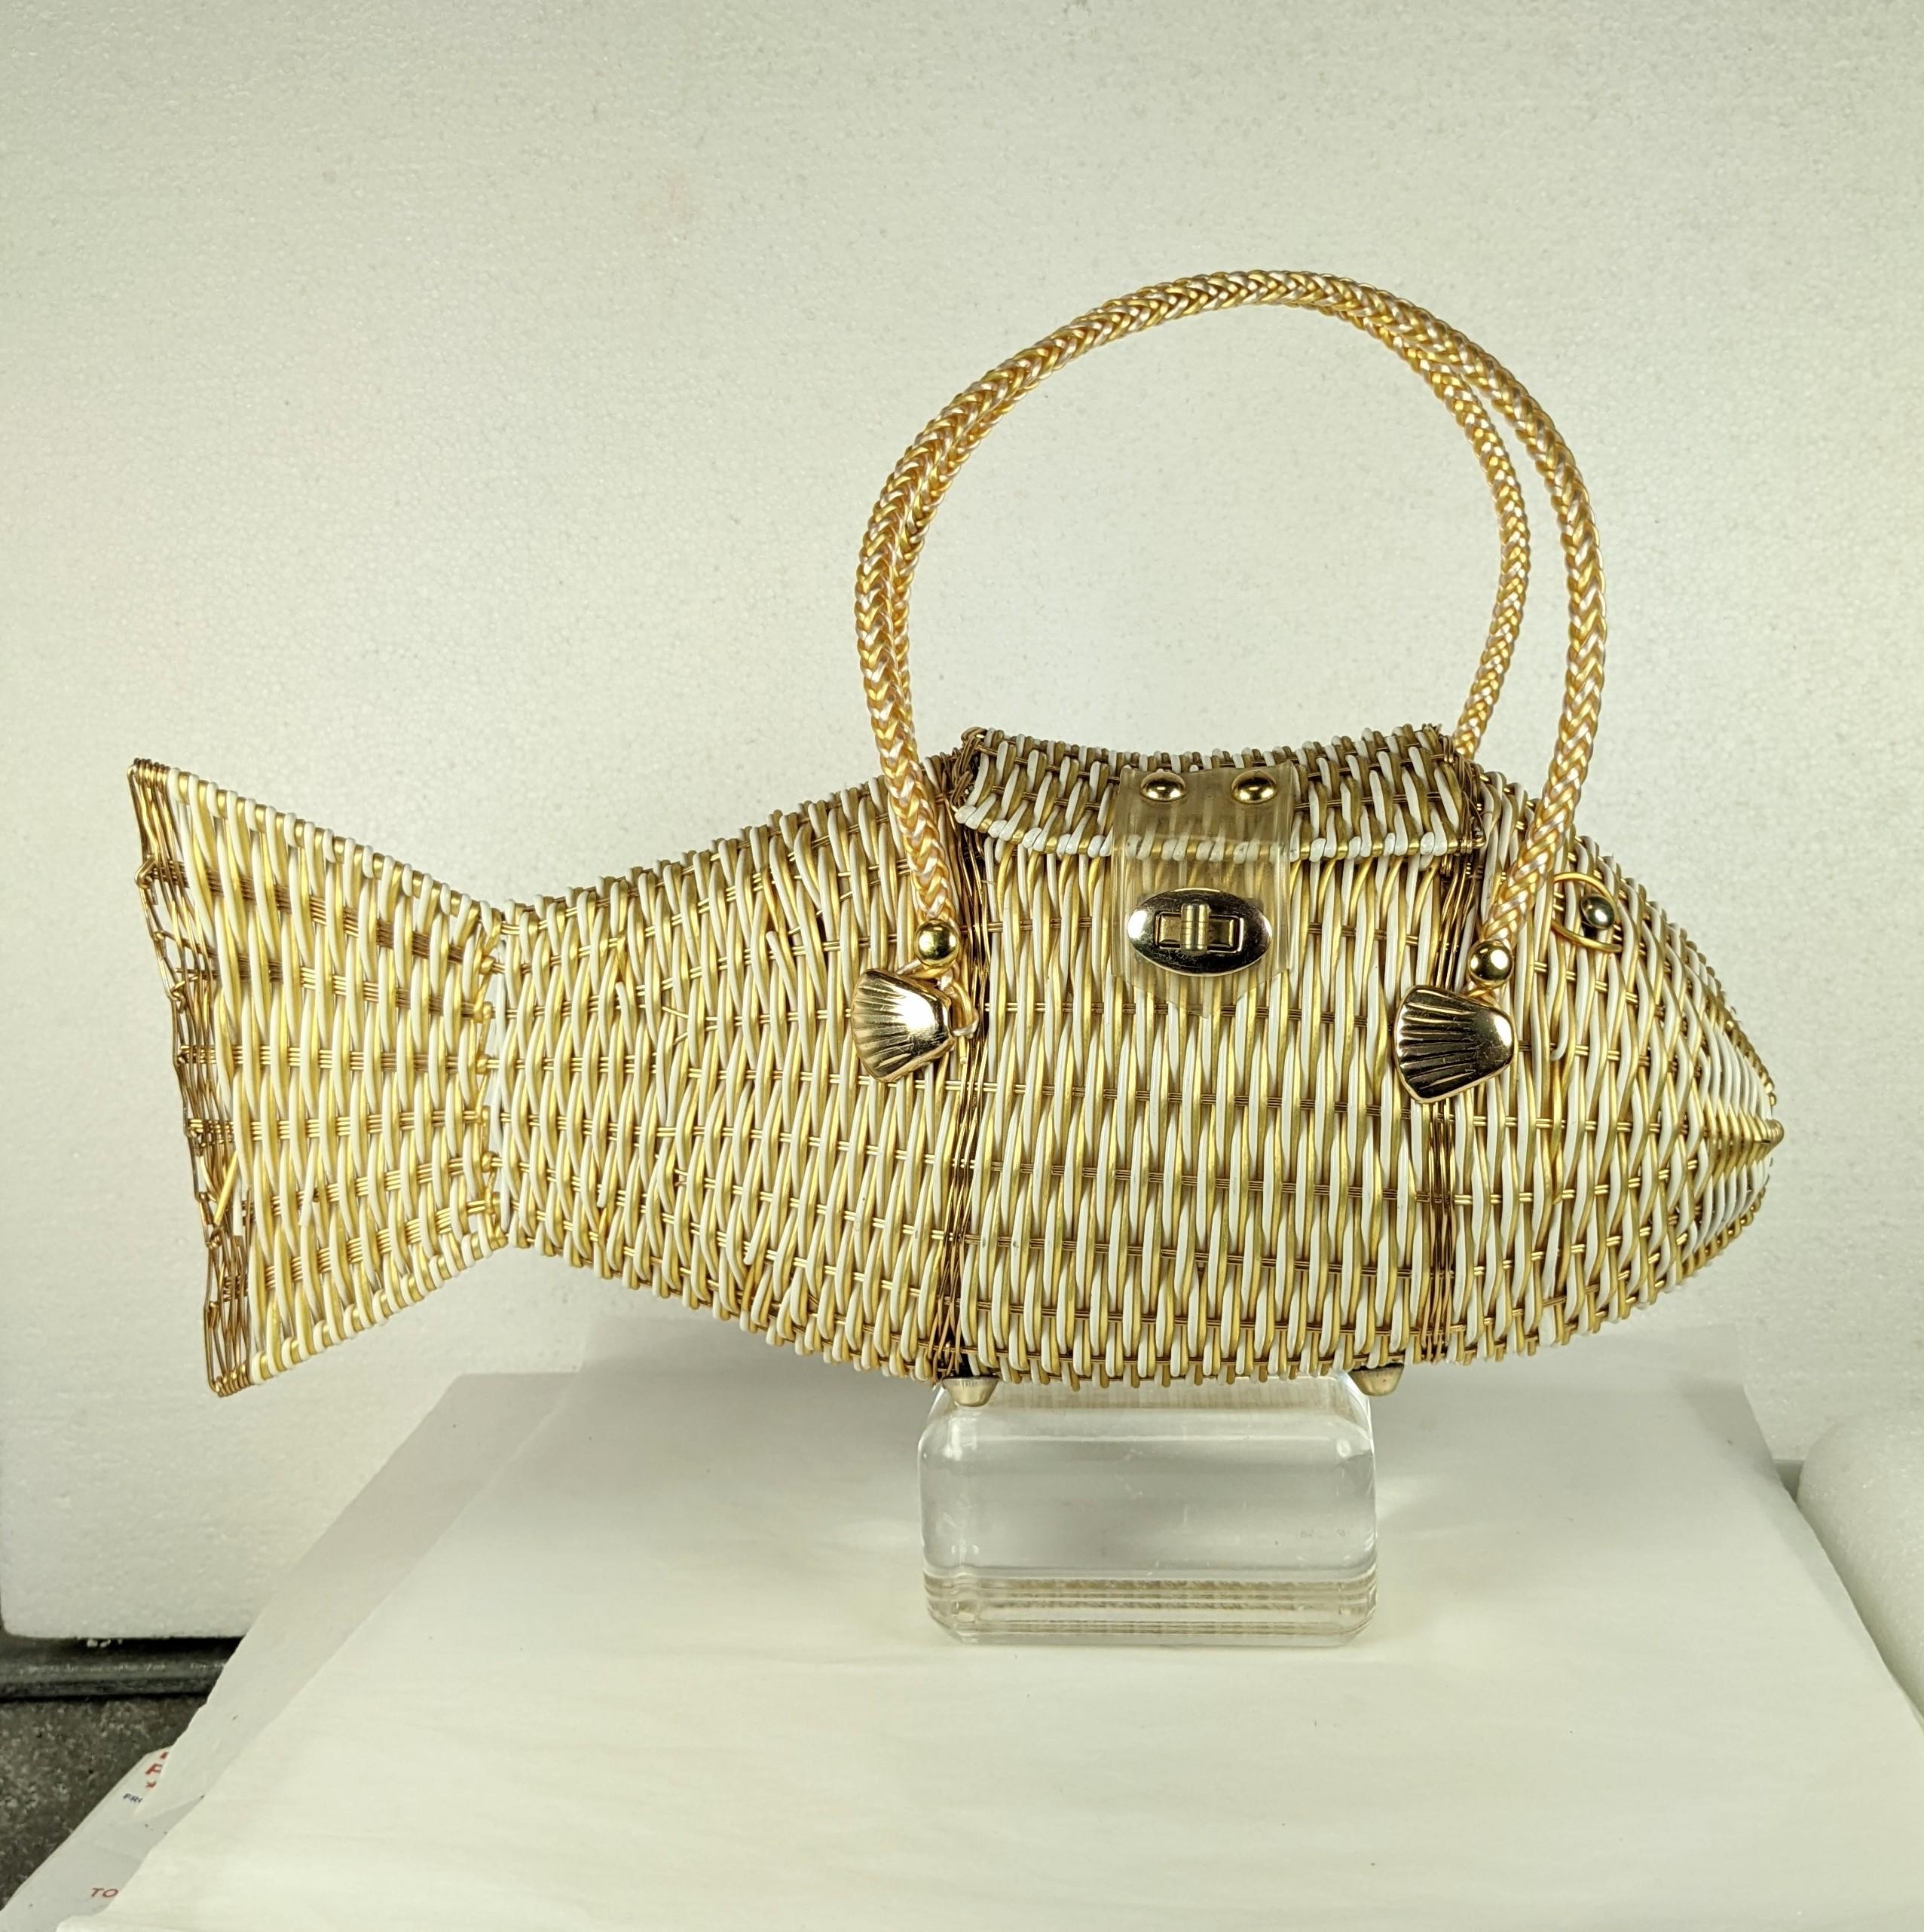 Charmant sac à poisson figuratif tissé des années 1960, fabriqué à la main à Hong Kong en filament de nylon plastifié blanc et or. Fermeture à rabat avec serrure tournante. Vraiment cool avec la doublure en mousseline de coton et les ailerons dorés